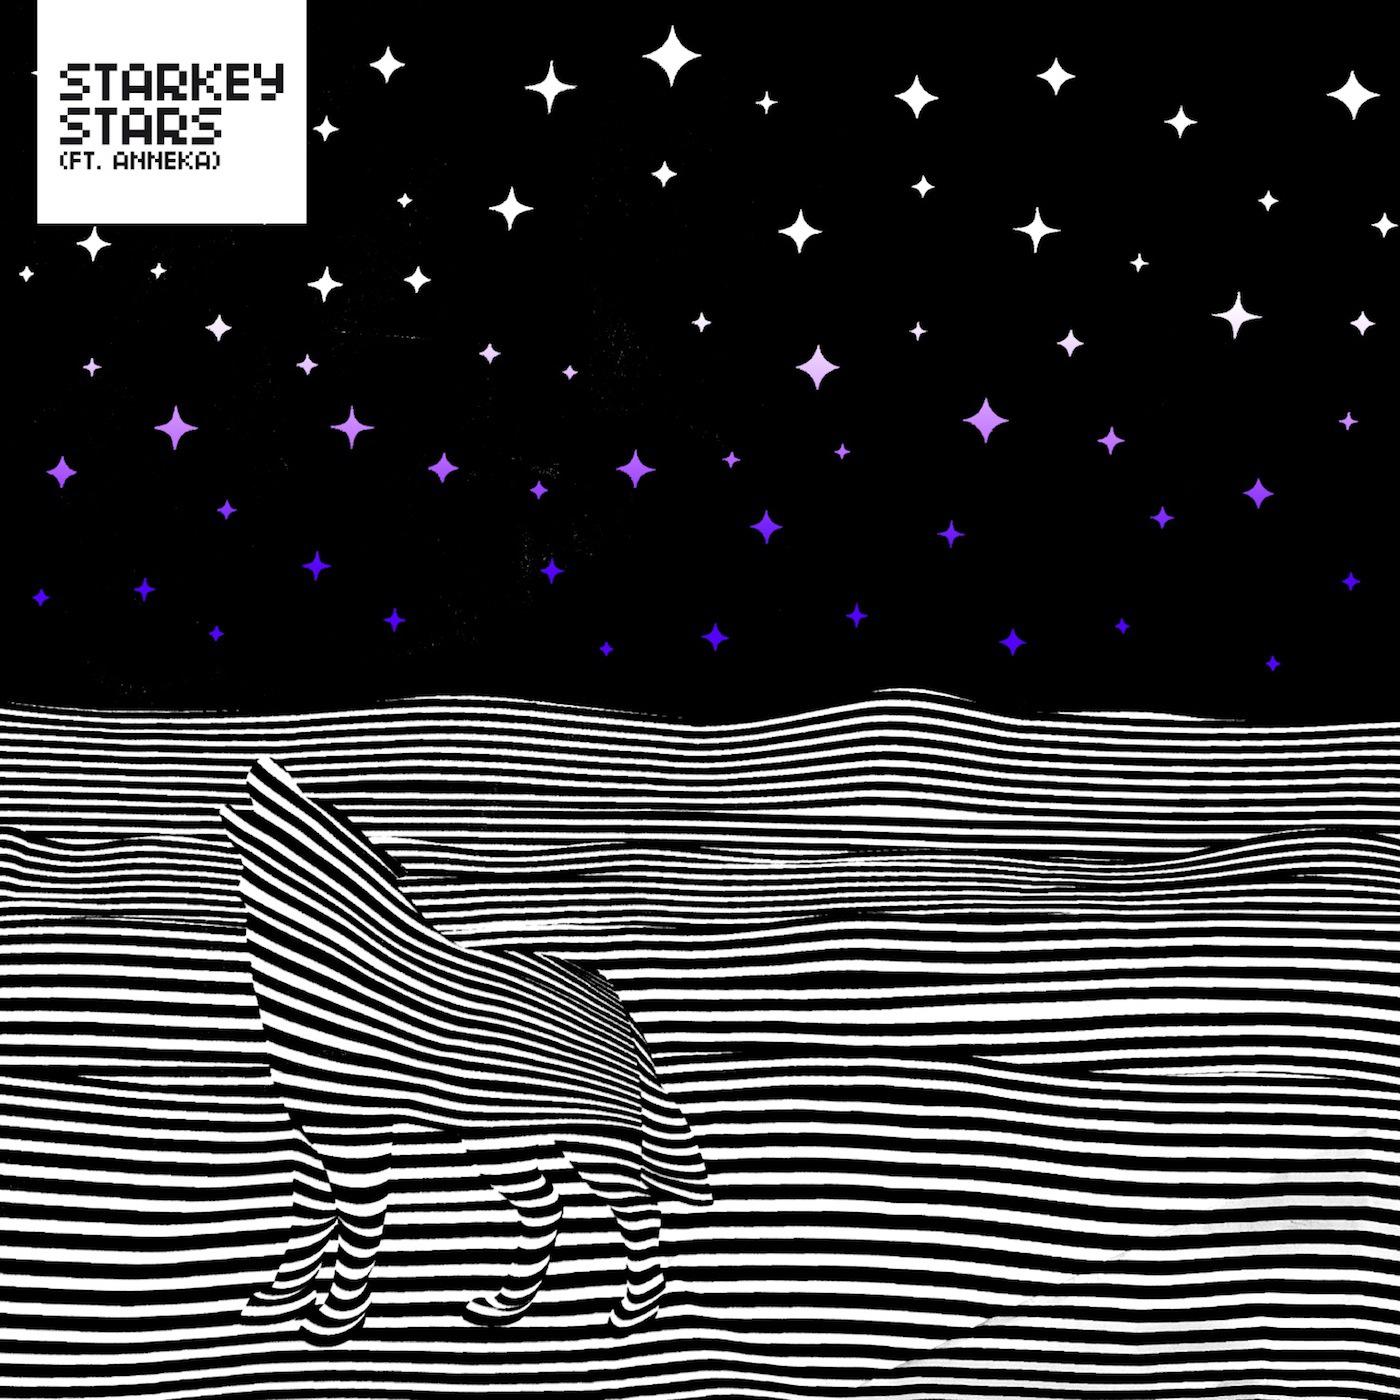 Stars (Slugabed Did A Remix)